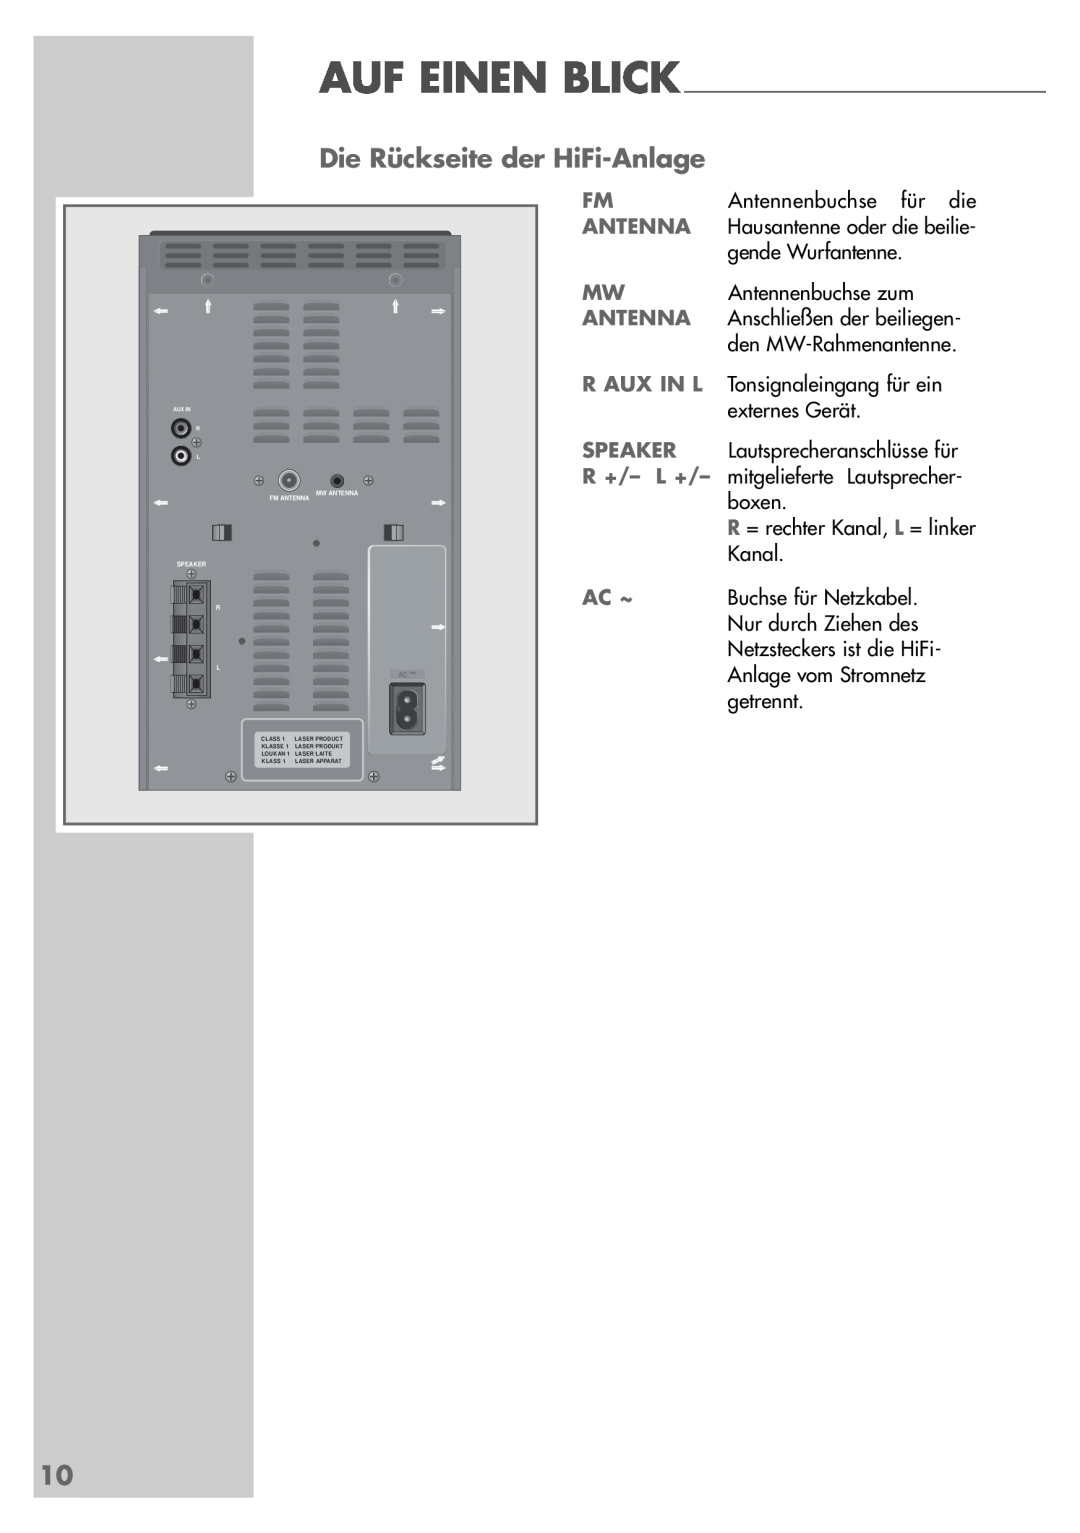 Grundig UMS 5400 DEC manual Die Rückseite der HiFi-Anlage, Ac ~, Auf Einen Blick 